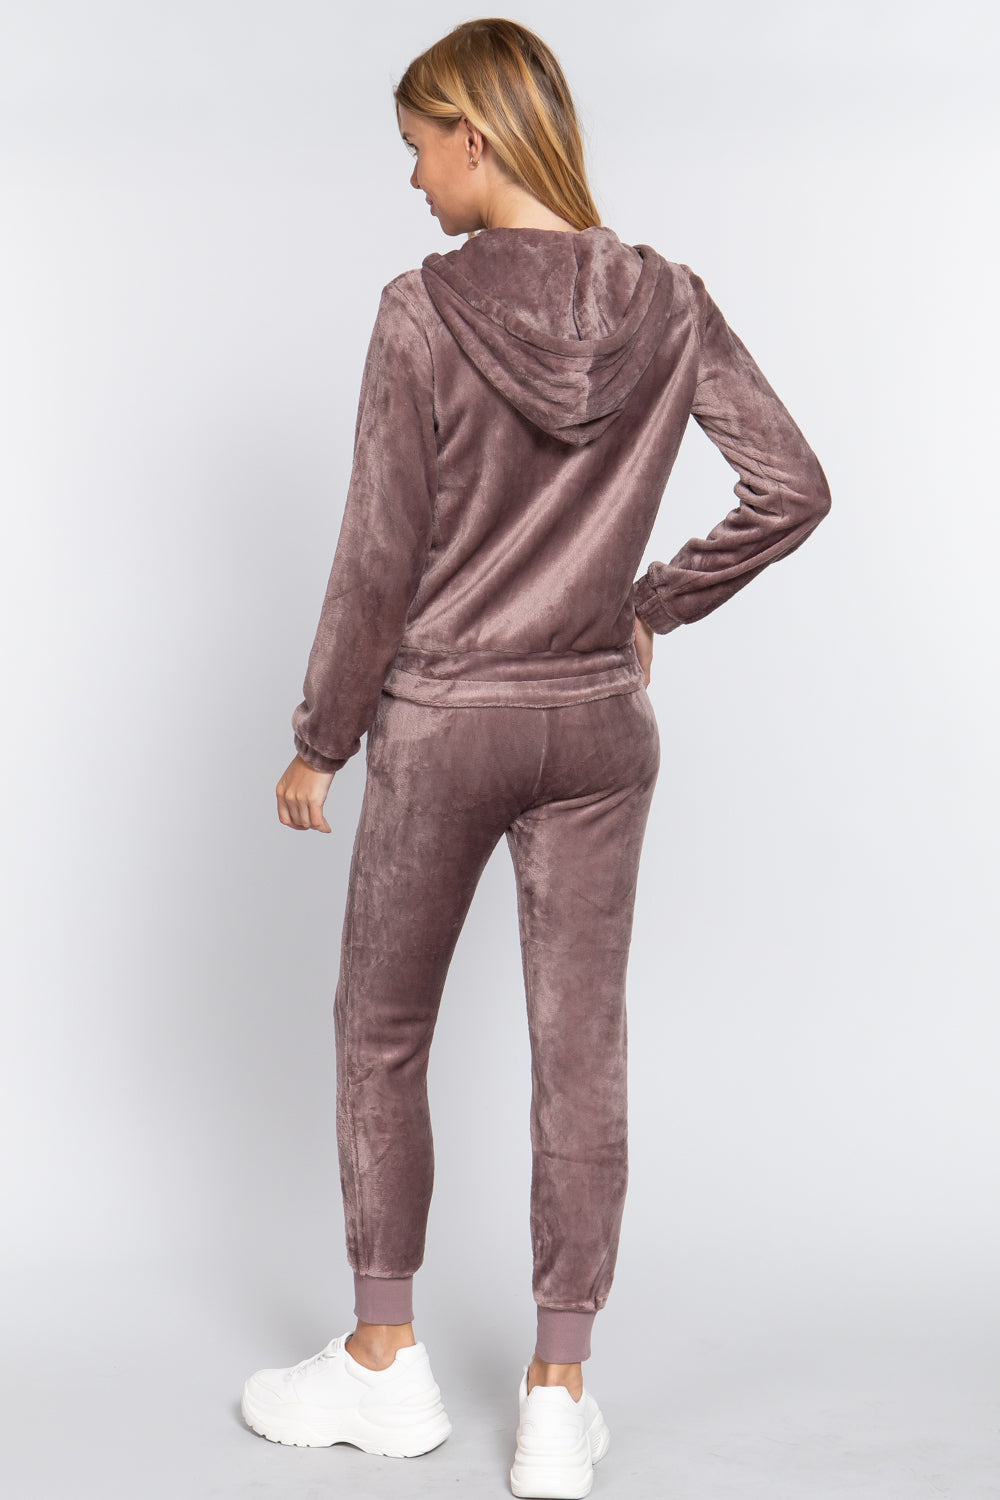 - Faux Fur Jacket & Jogger Pants Outfit Set - 9 colors - womens jogging set at TFC&H Co.